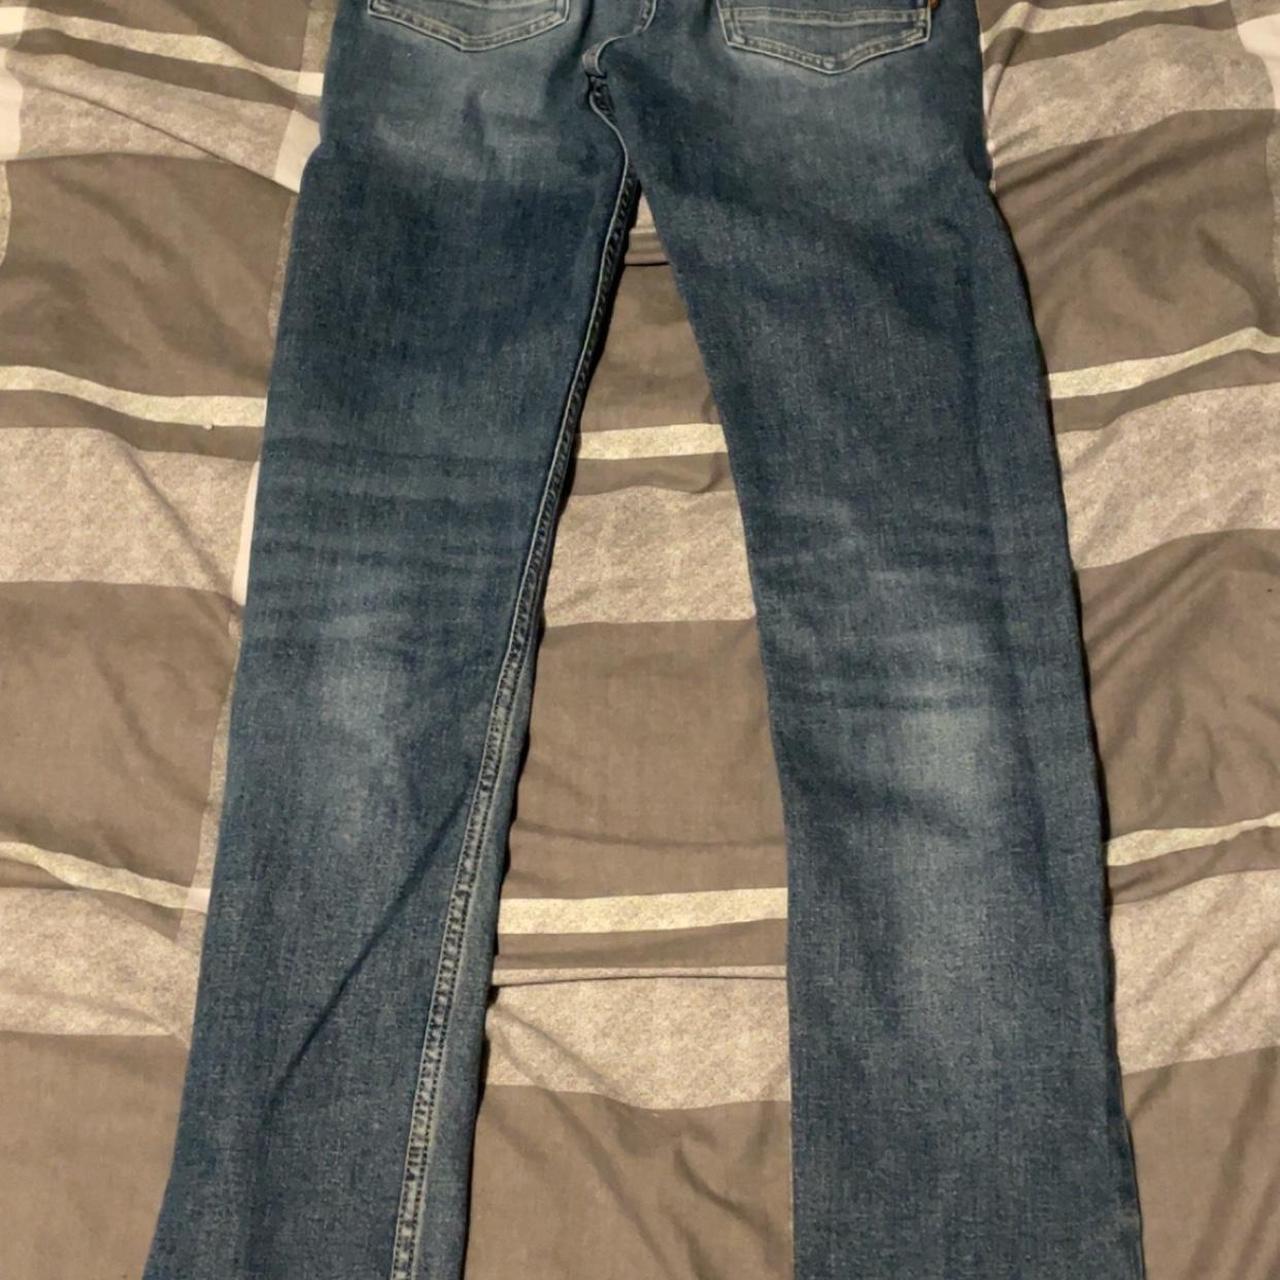 Hugo boss jeans Waist 32 Leg length 31 - Depop